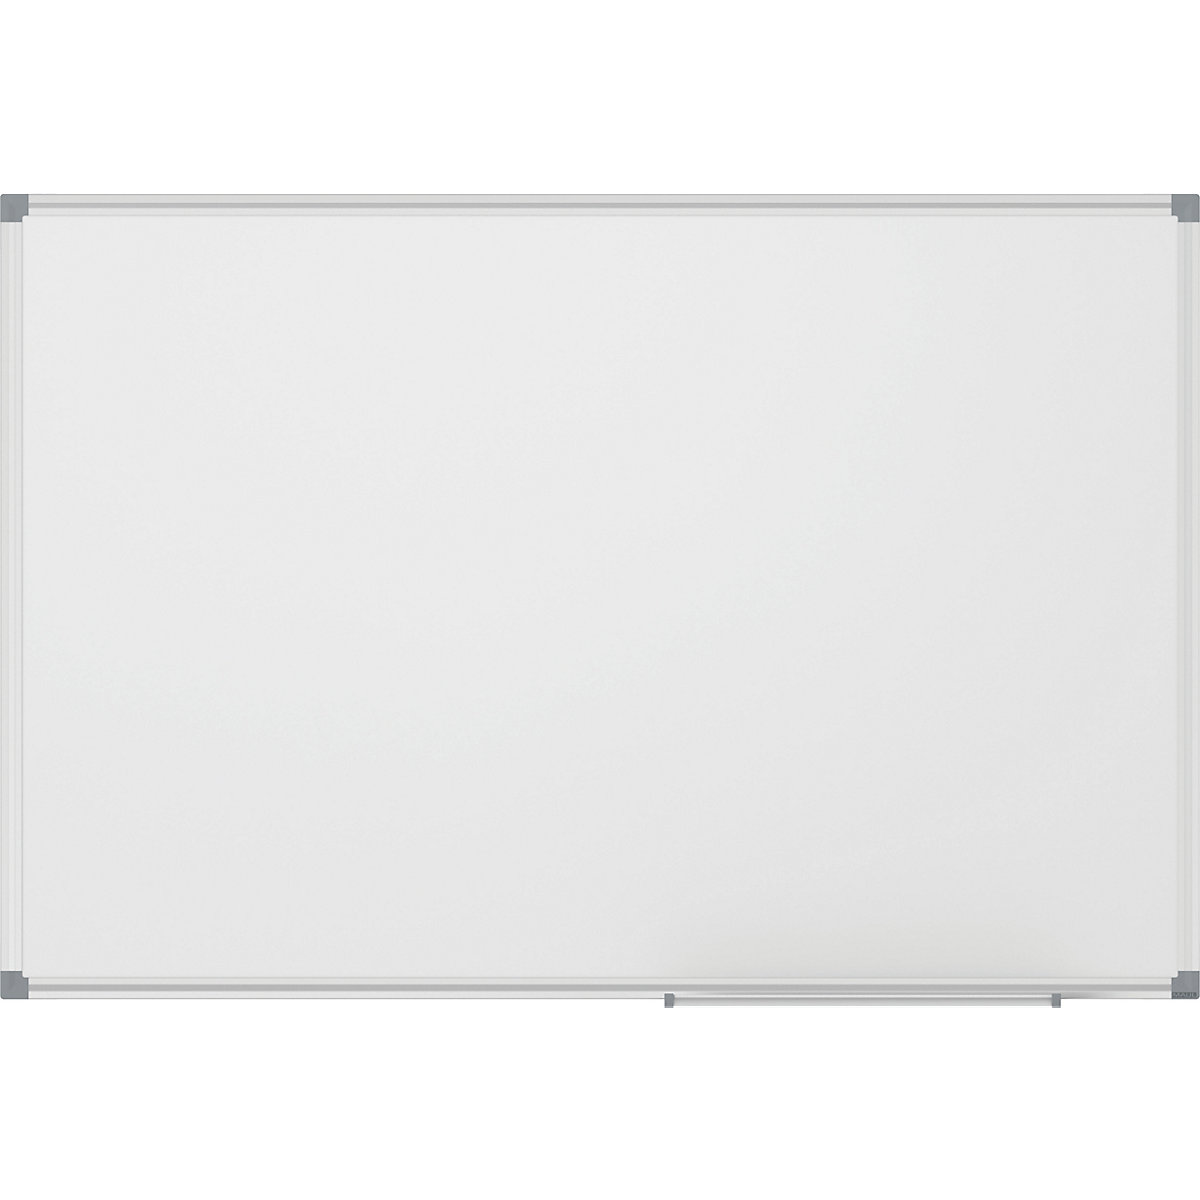 MAULstandard whiteboard, white – MAUL